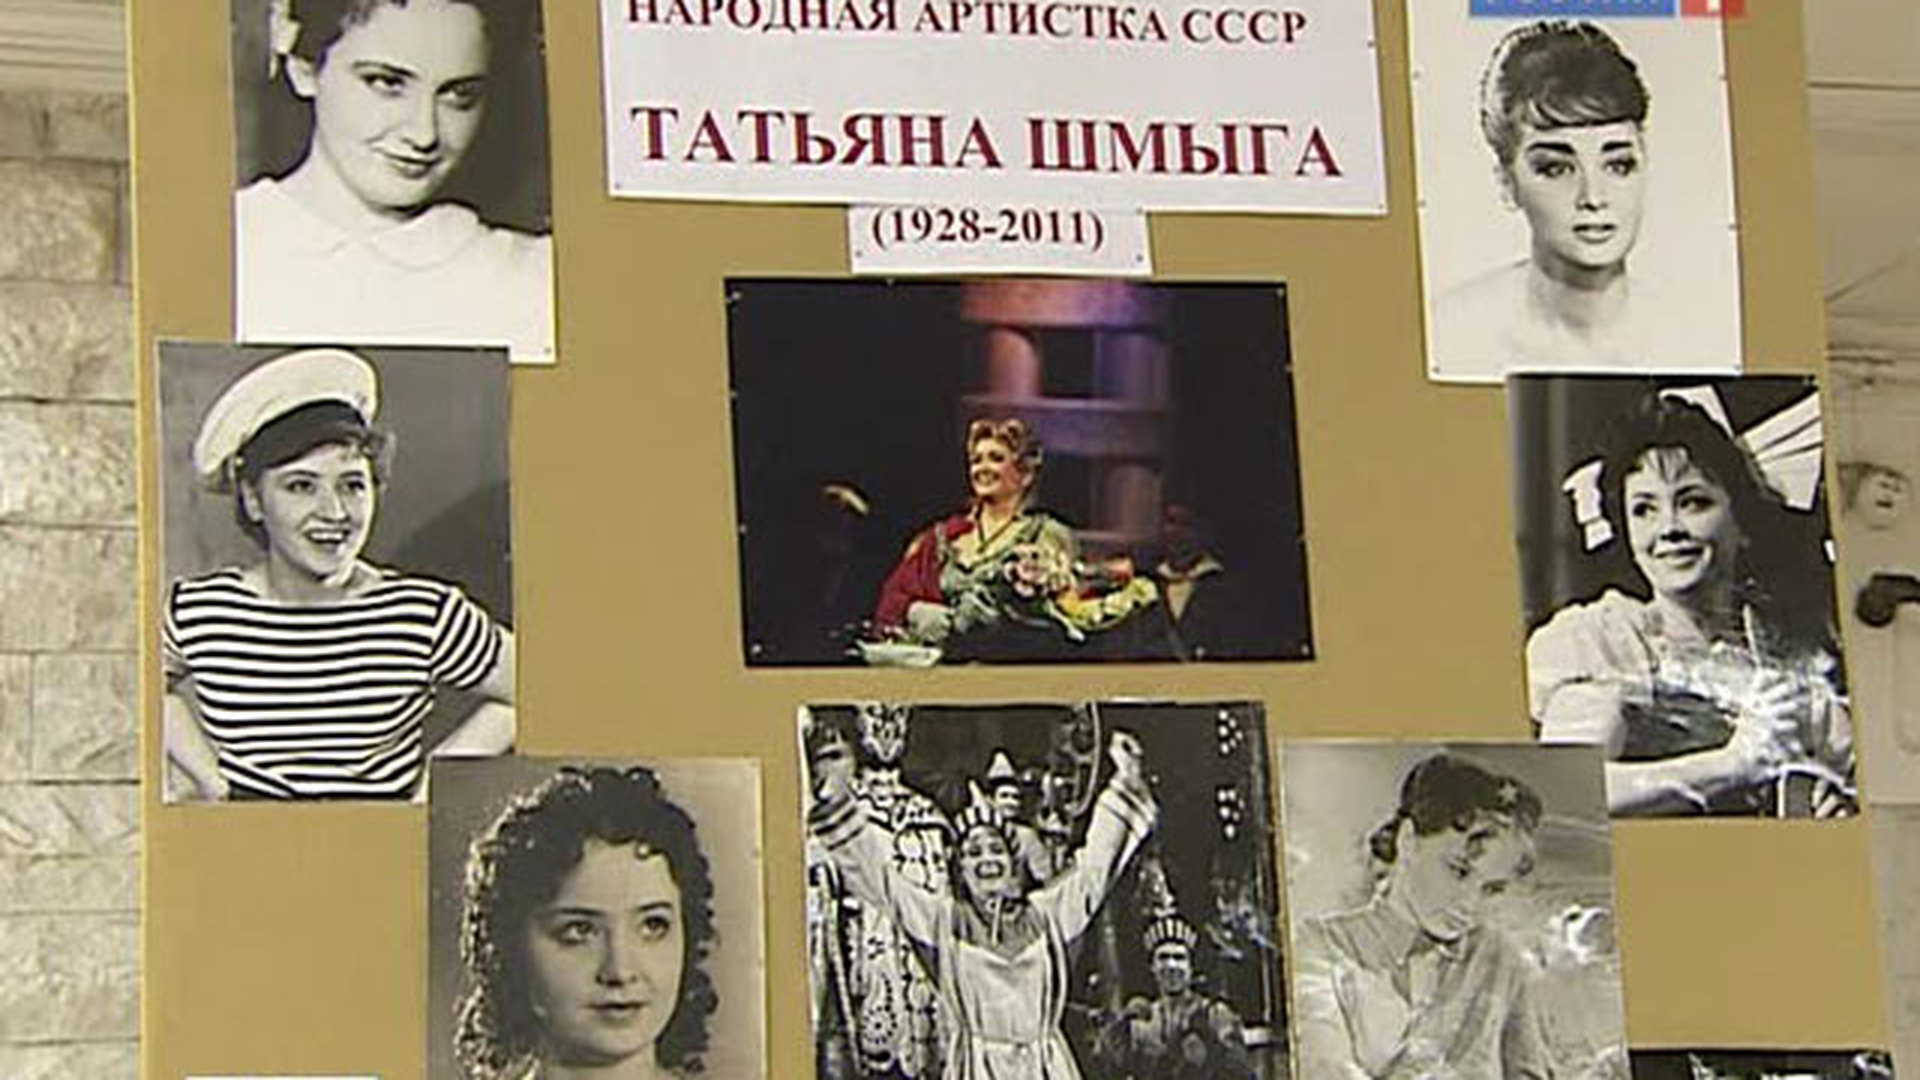 Татьяна Ивановна Шмыга народная артистка СССР